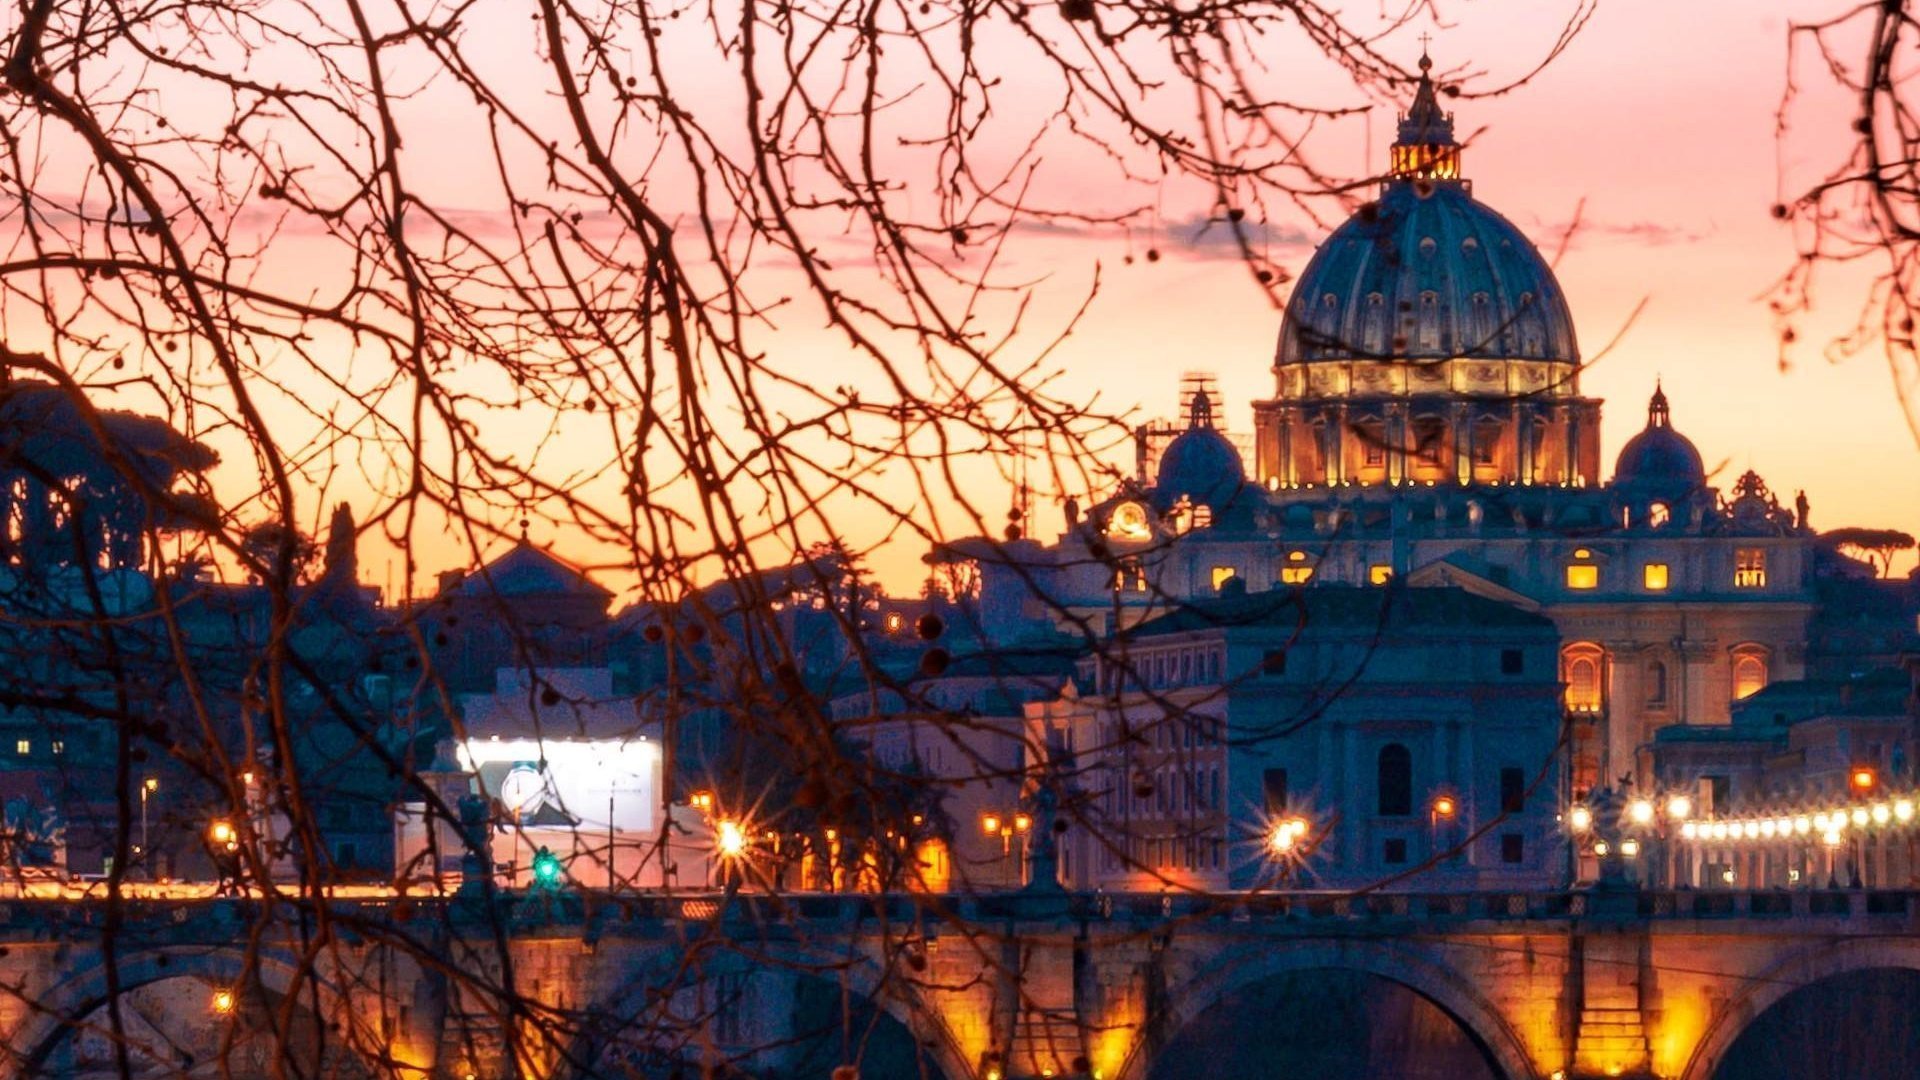 Le Vatican vu lors de notre visite nocturne de Rome